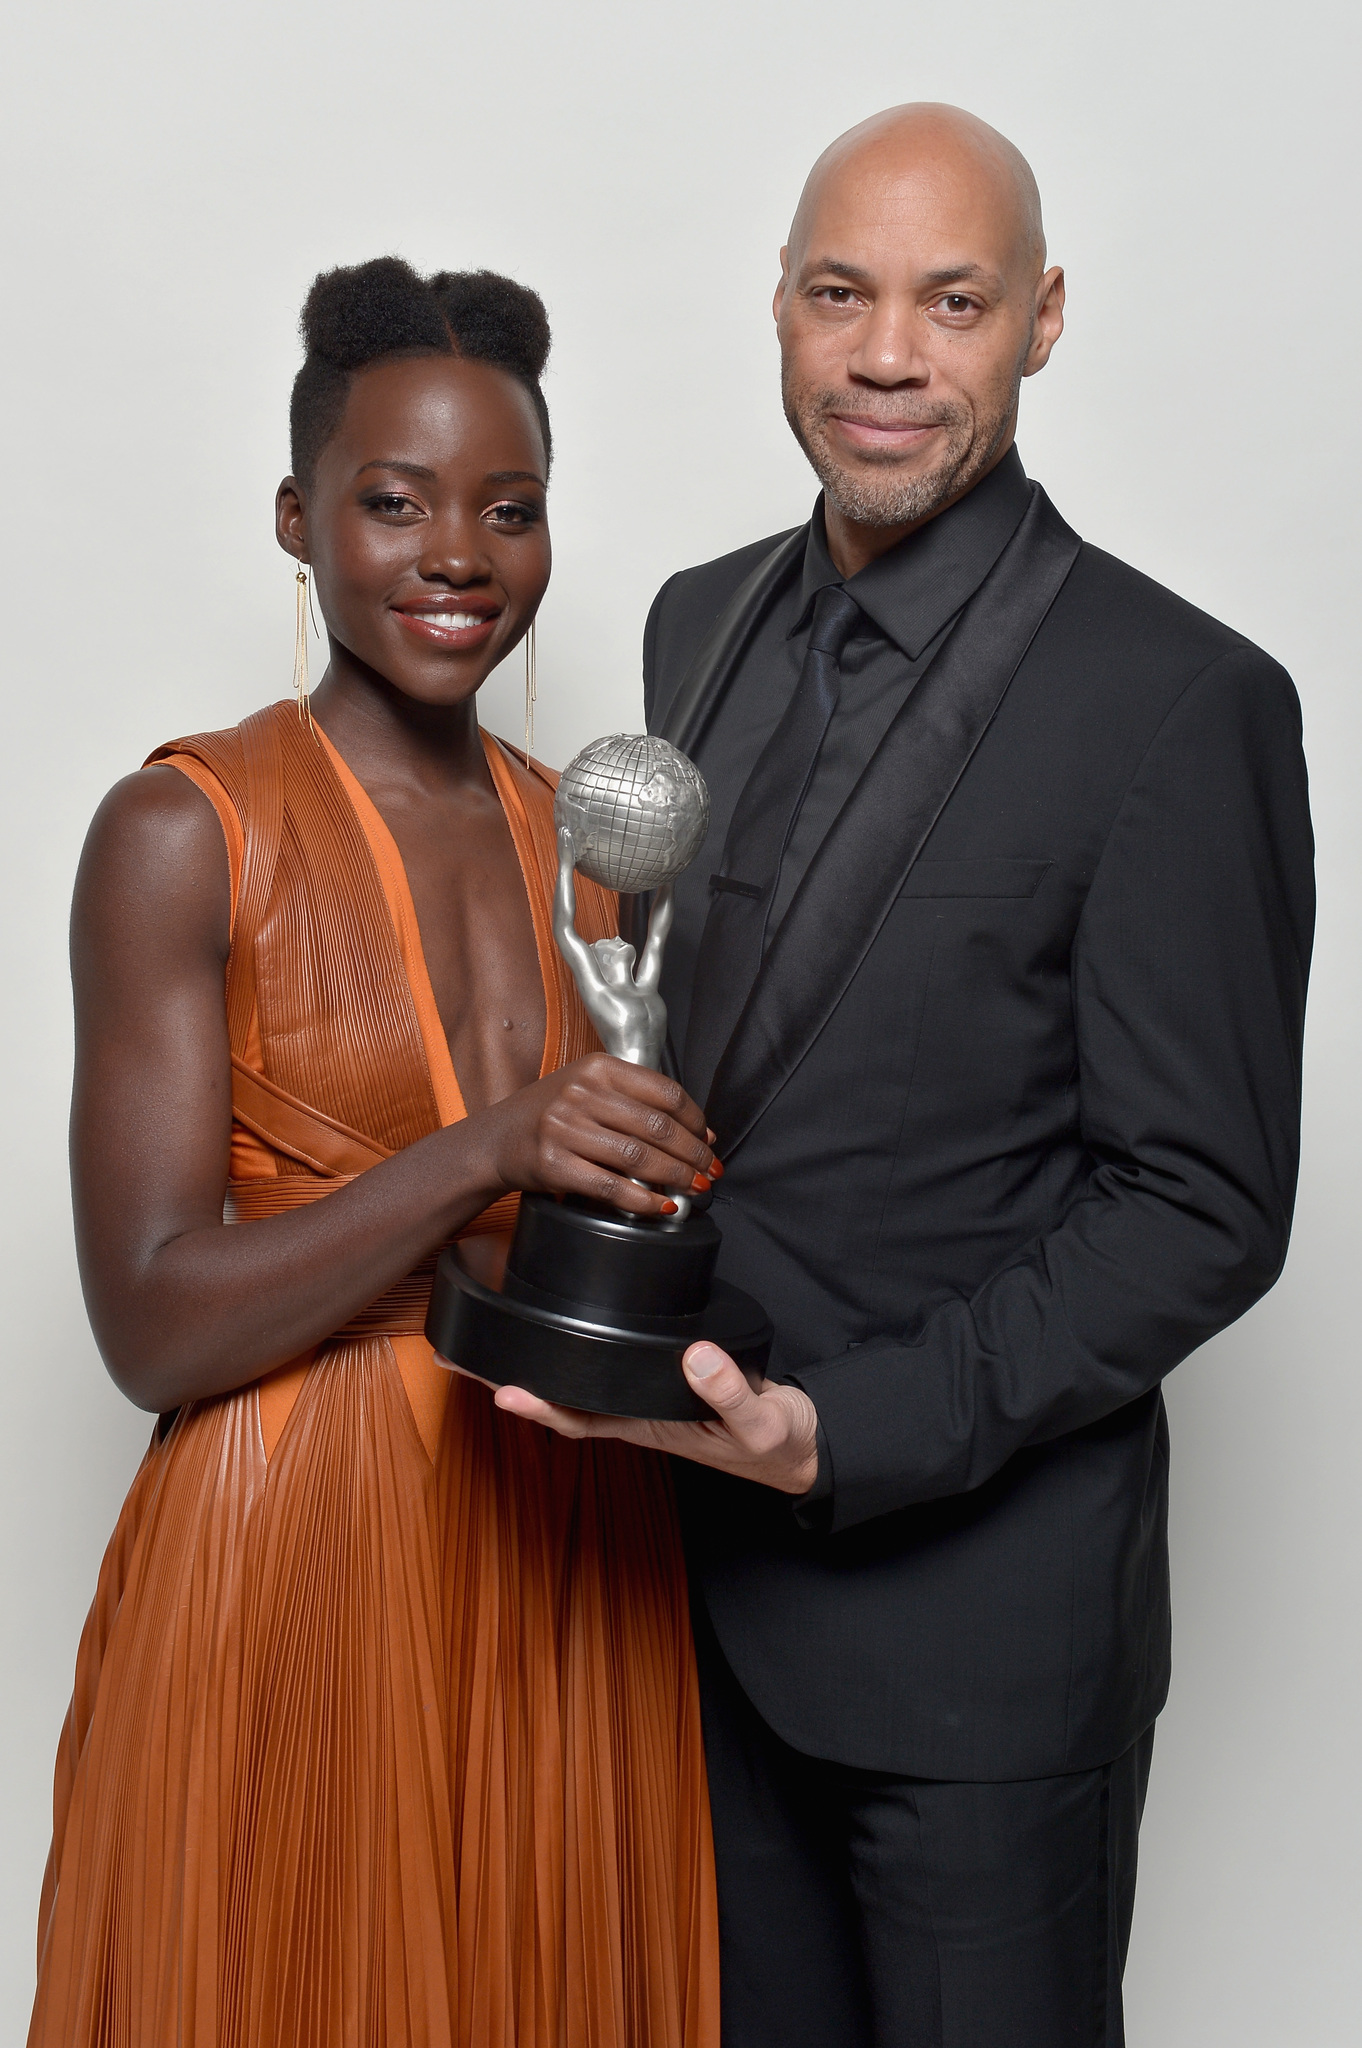 John Ridley and Lupita Nyong'o